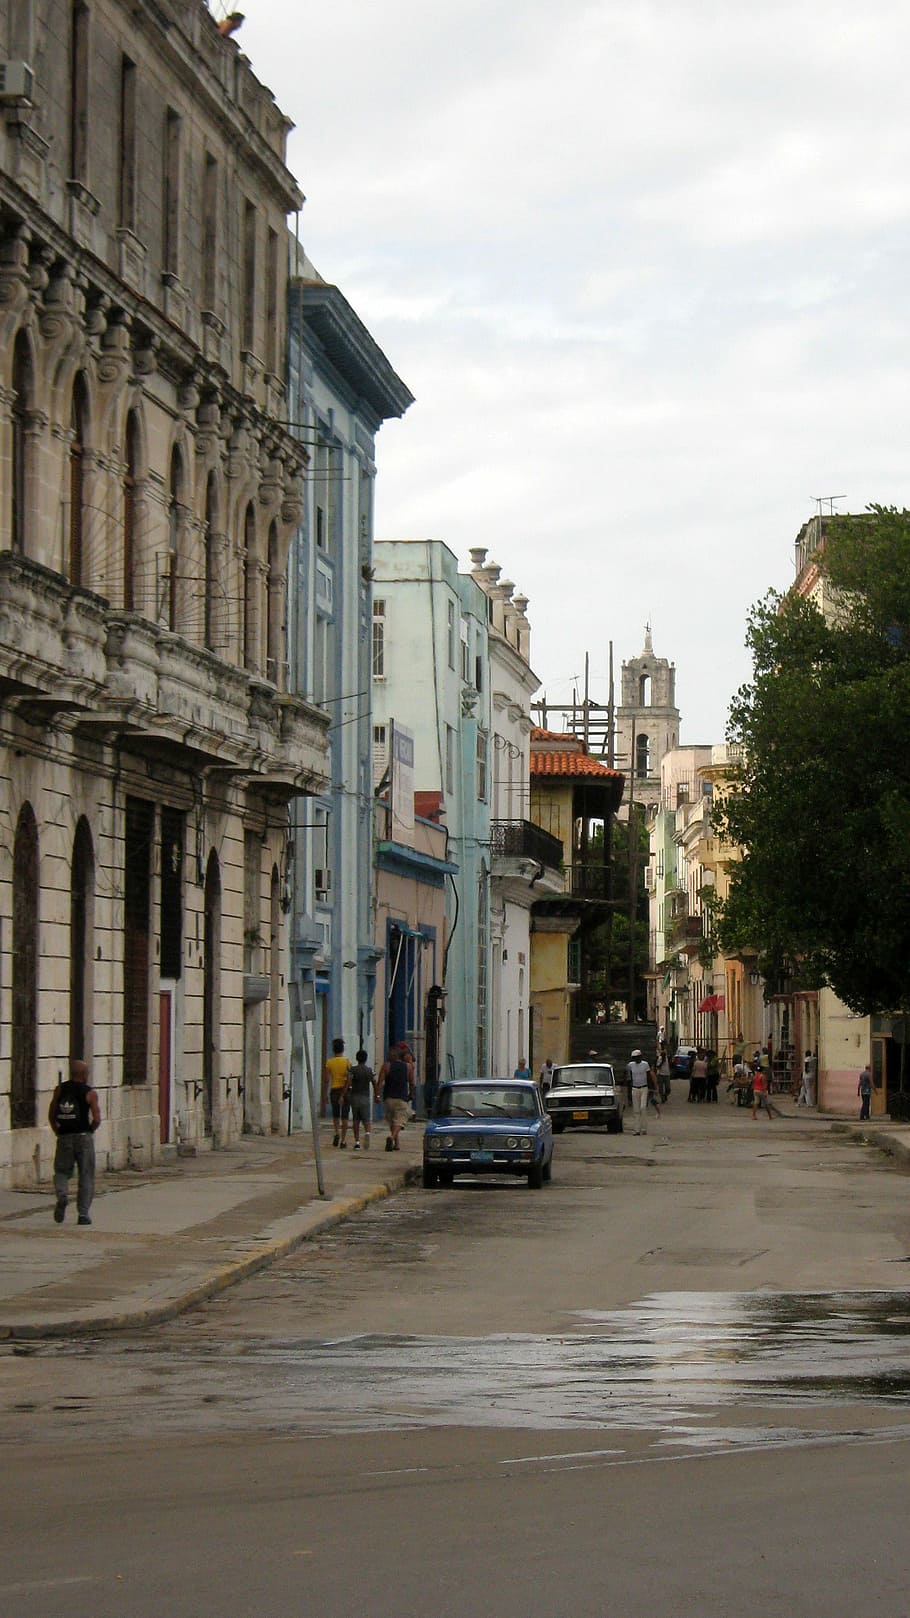 buildings, havana, Street, Havana, Cuba, Cuba, photos, public domain, sky, architecture, urban Scene